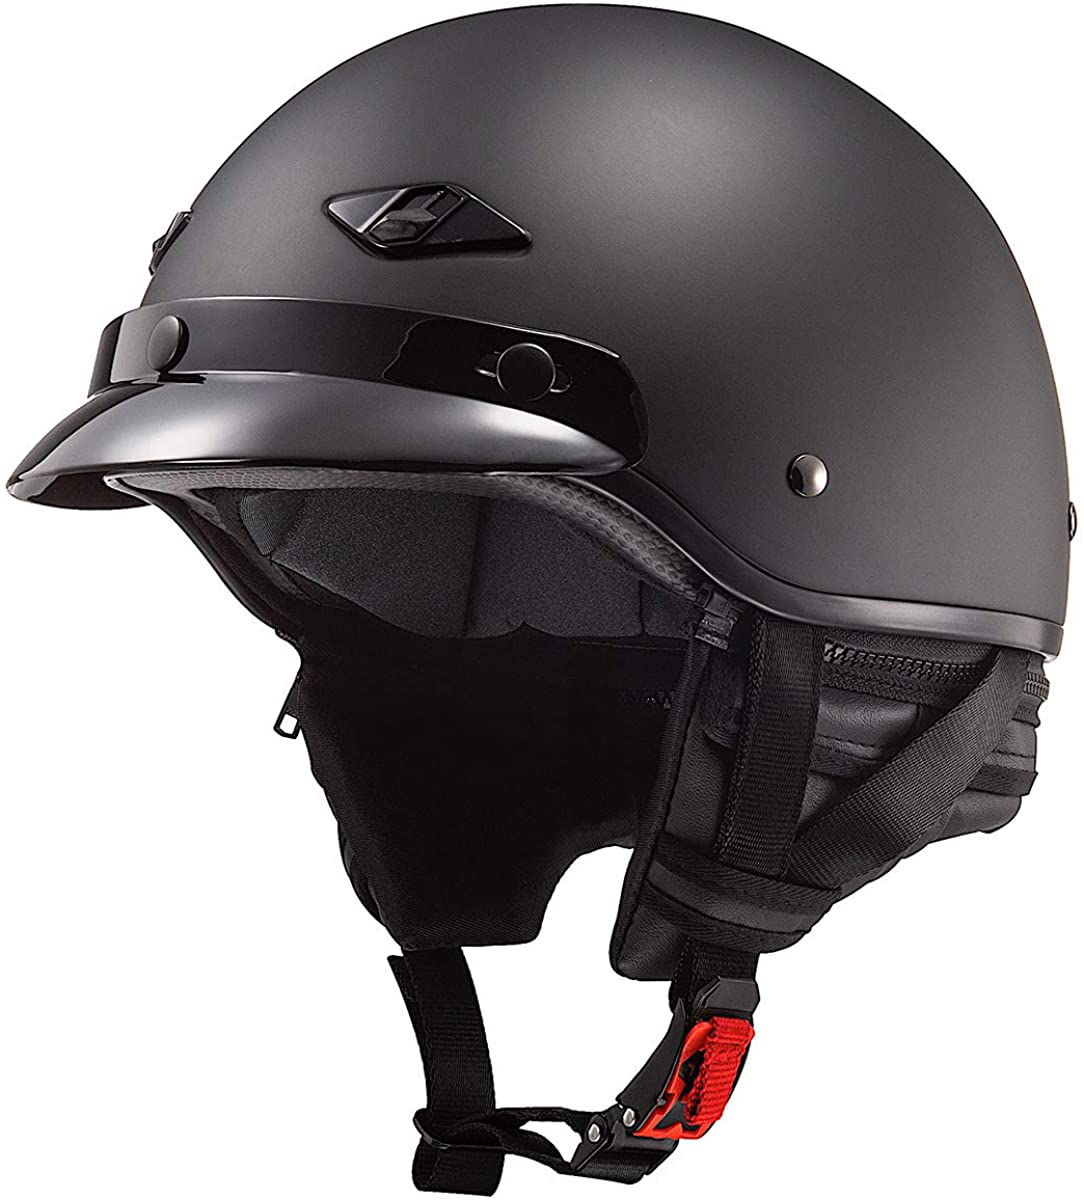 LS2 Helmets Bagger Motorcycle Half Helmet